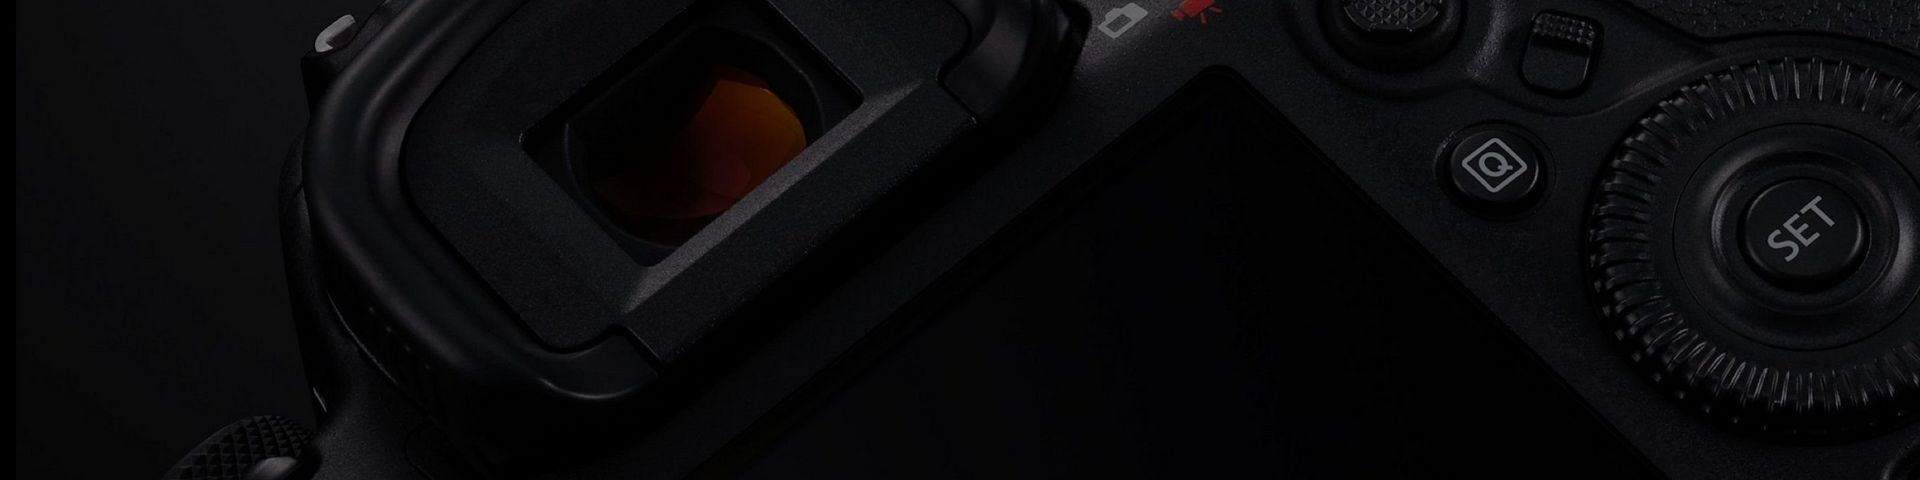 Full Frame DSLR Camera